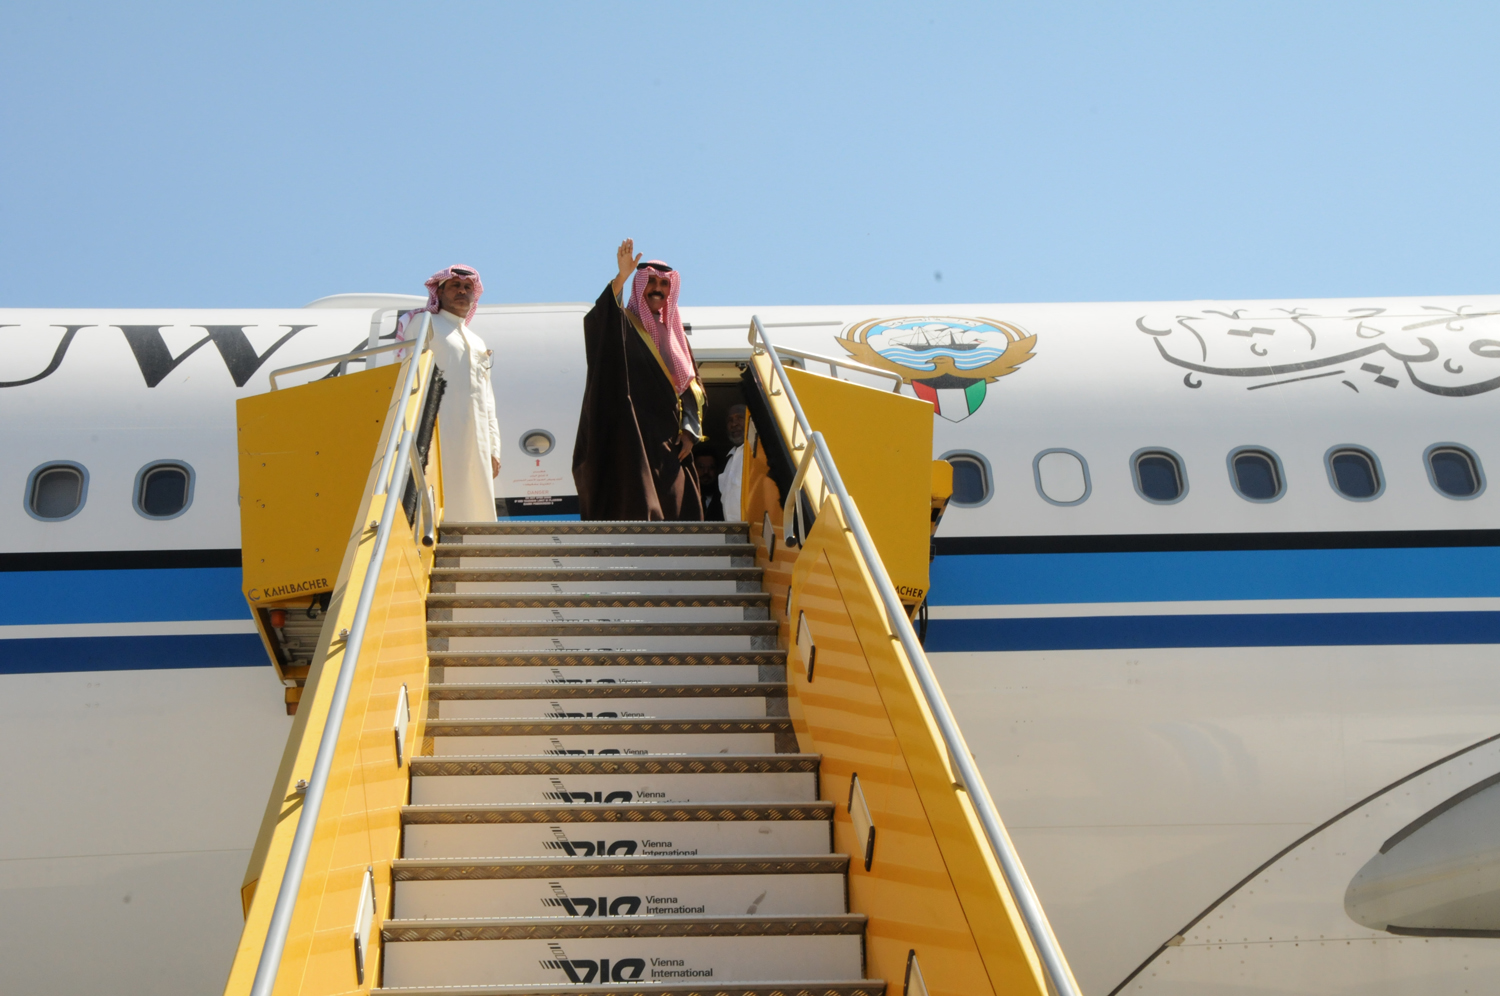 His Highness the Crown Prince of Kuwait Sheikh Nawaf Al-Ahmad Al-Jaber Al-Sabah lefts Vienna heading back home